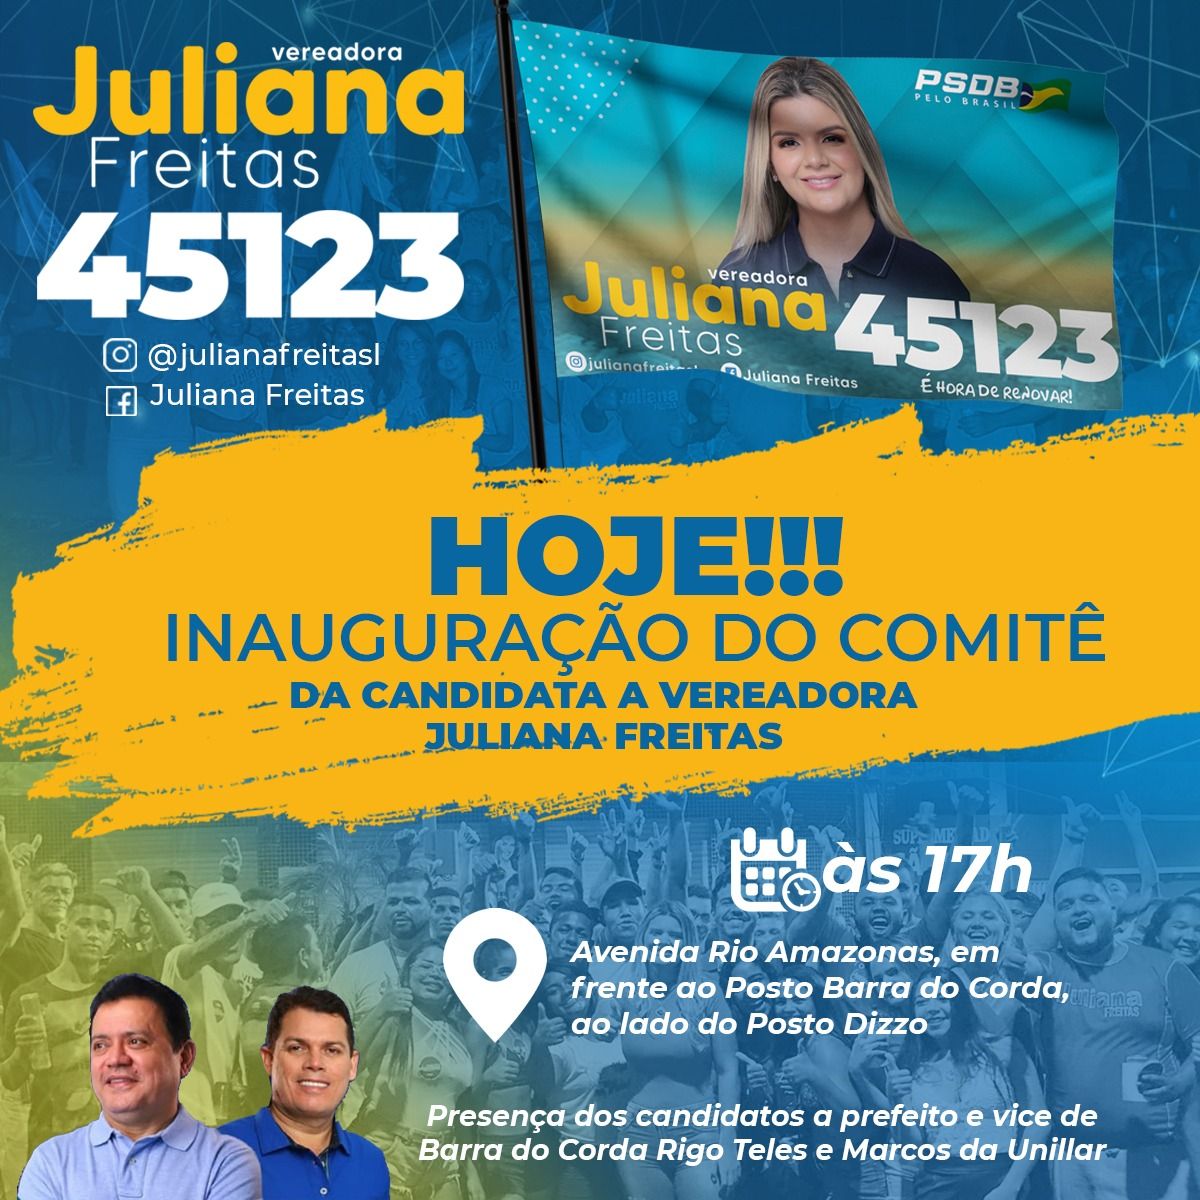 Candidata a vereadora Juliana Freitas vai inaugurar comitê nesta segunda-feira em Barra do Corda